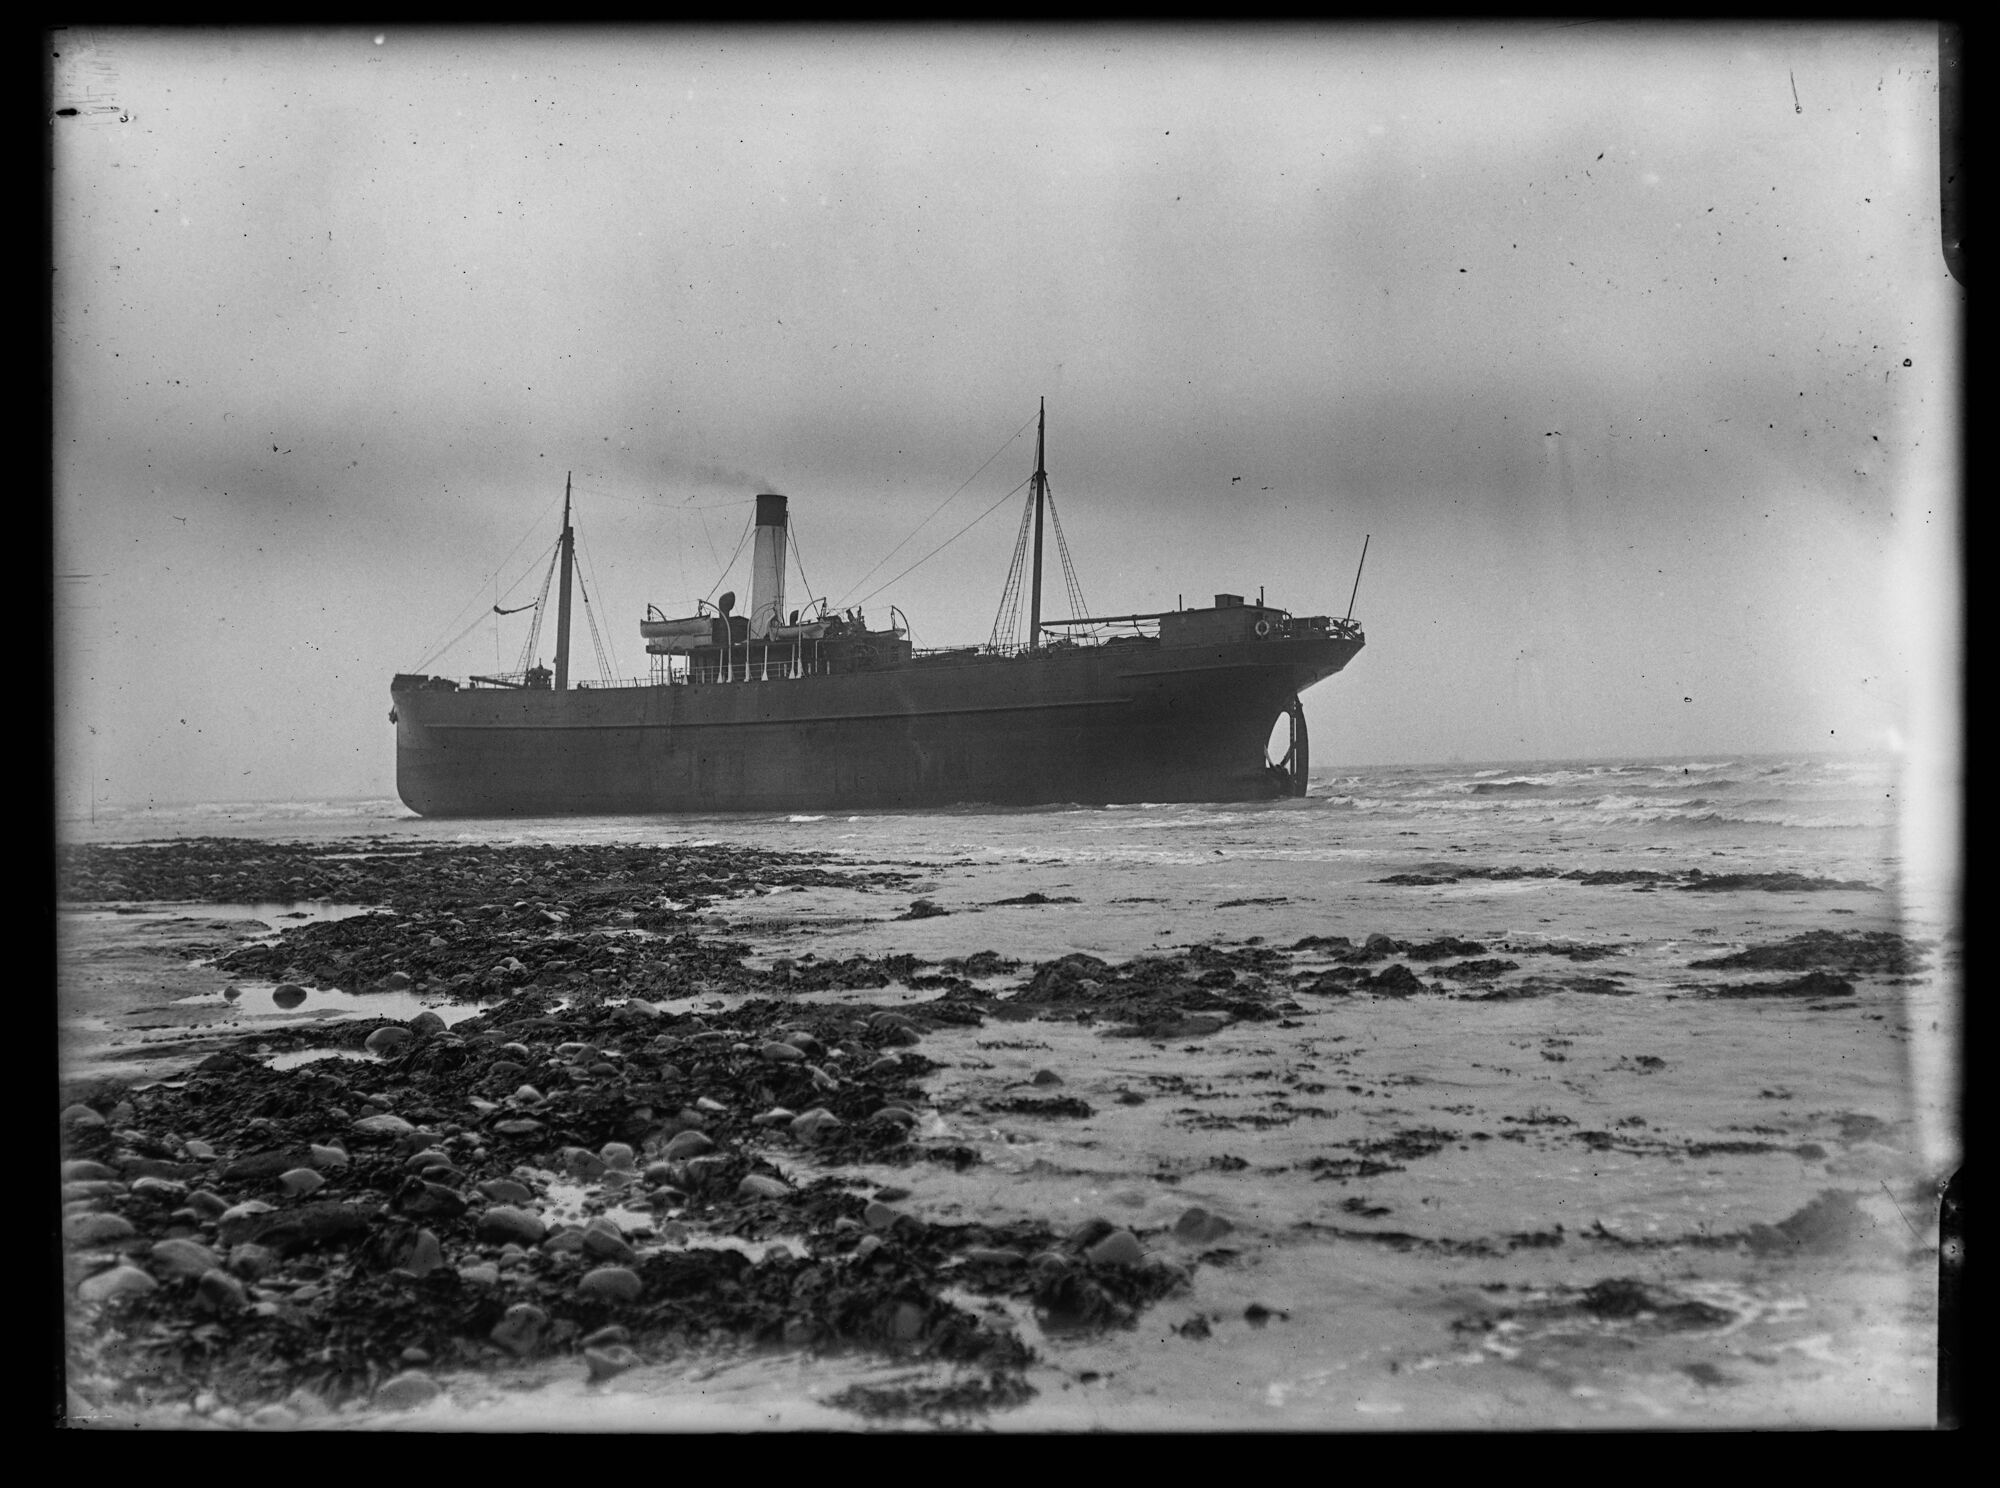 SS Fulmar aground off Walney Island, Barrow-in-Furness